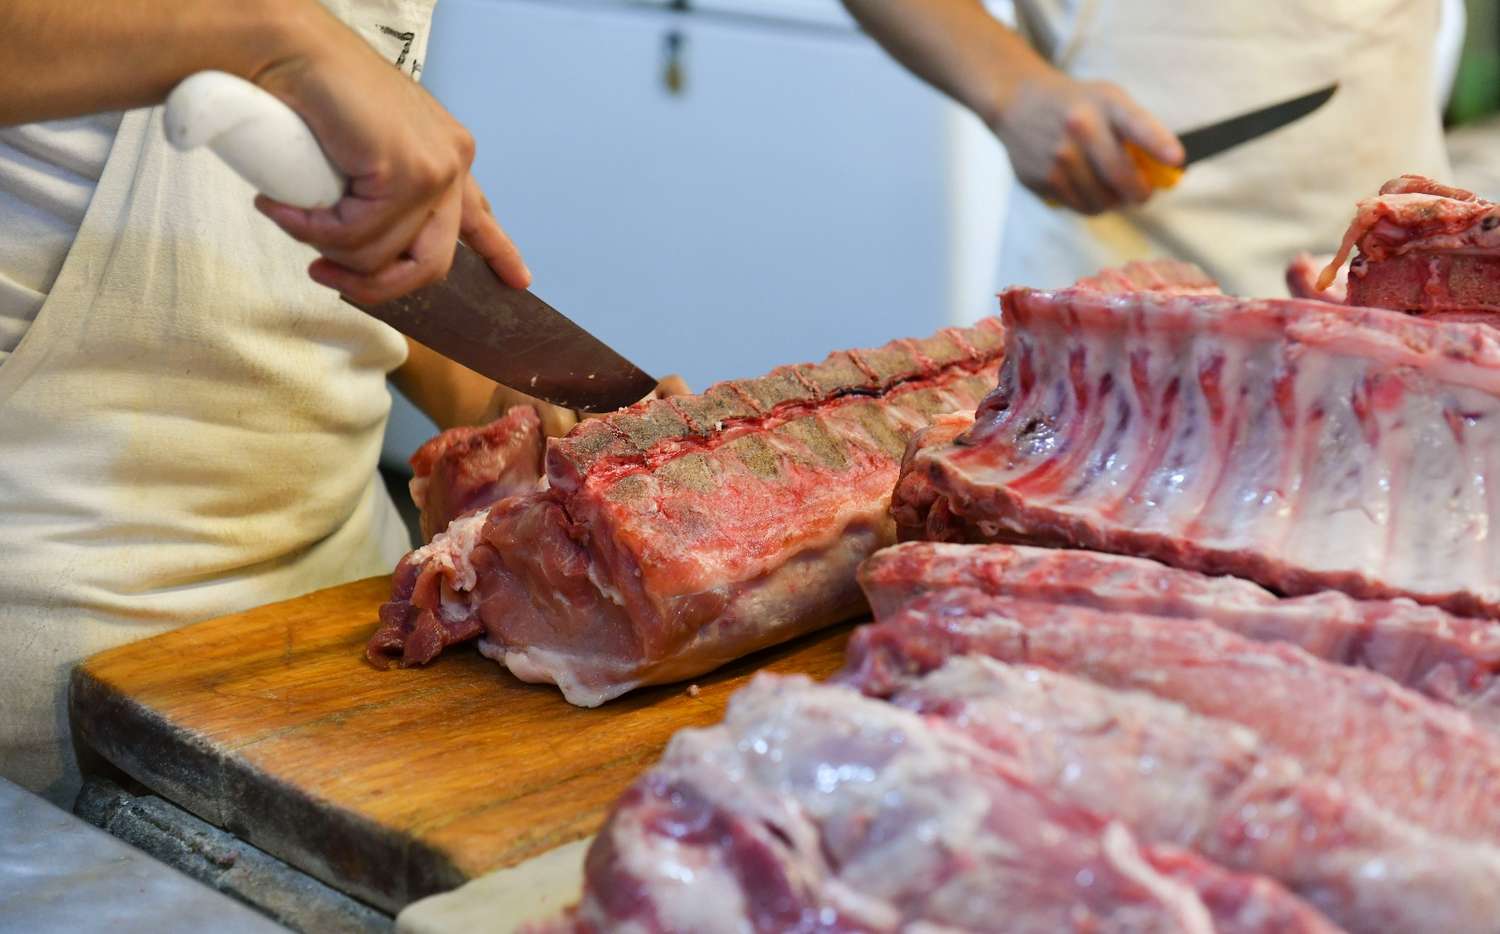 Para los carniceros, el precio de la carne hoy “es irreal”